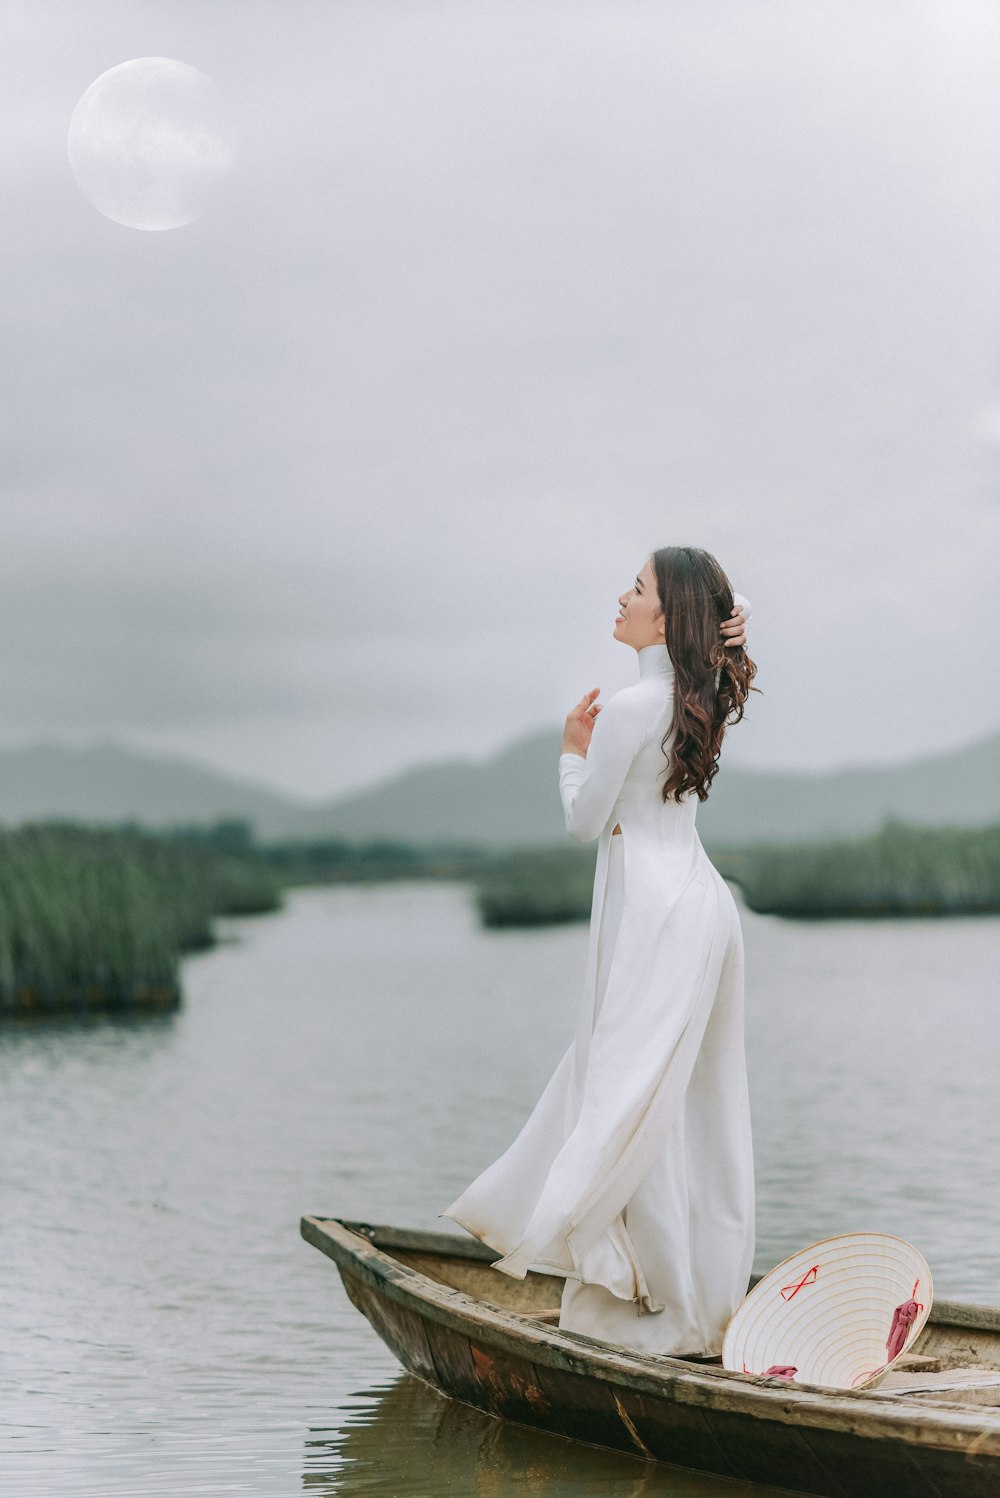 Mujer en vestido blanco de pie en un bote de madera marrón en el lago durante el día